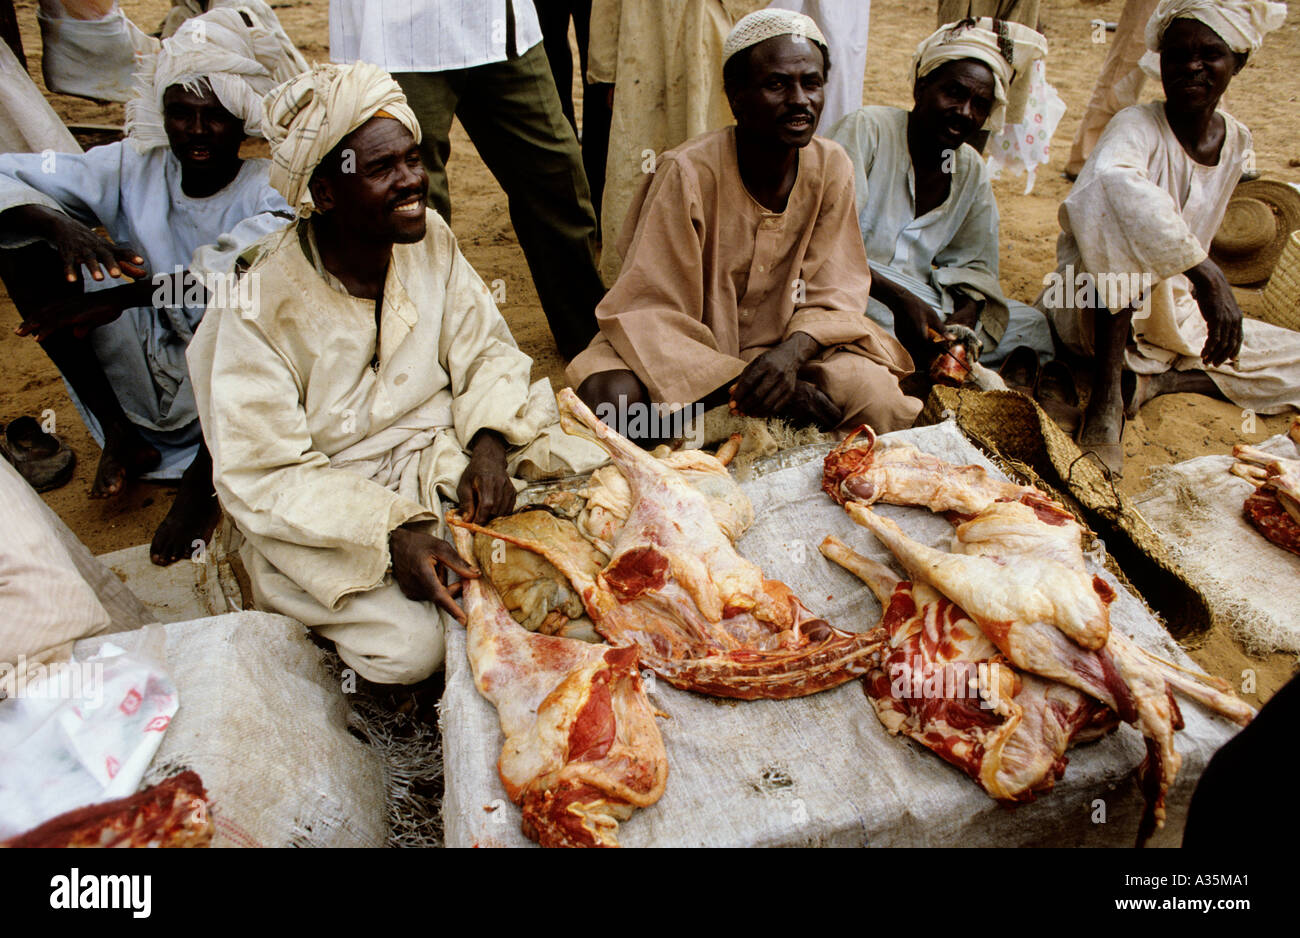 Soudan.Trading Post d'El Fasher, dans la région du Darfour au Soudan occidental. Les vendeurs avec leurs chameaux, découper la viande pour la nourriture. Banque D'Images